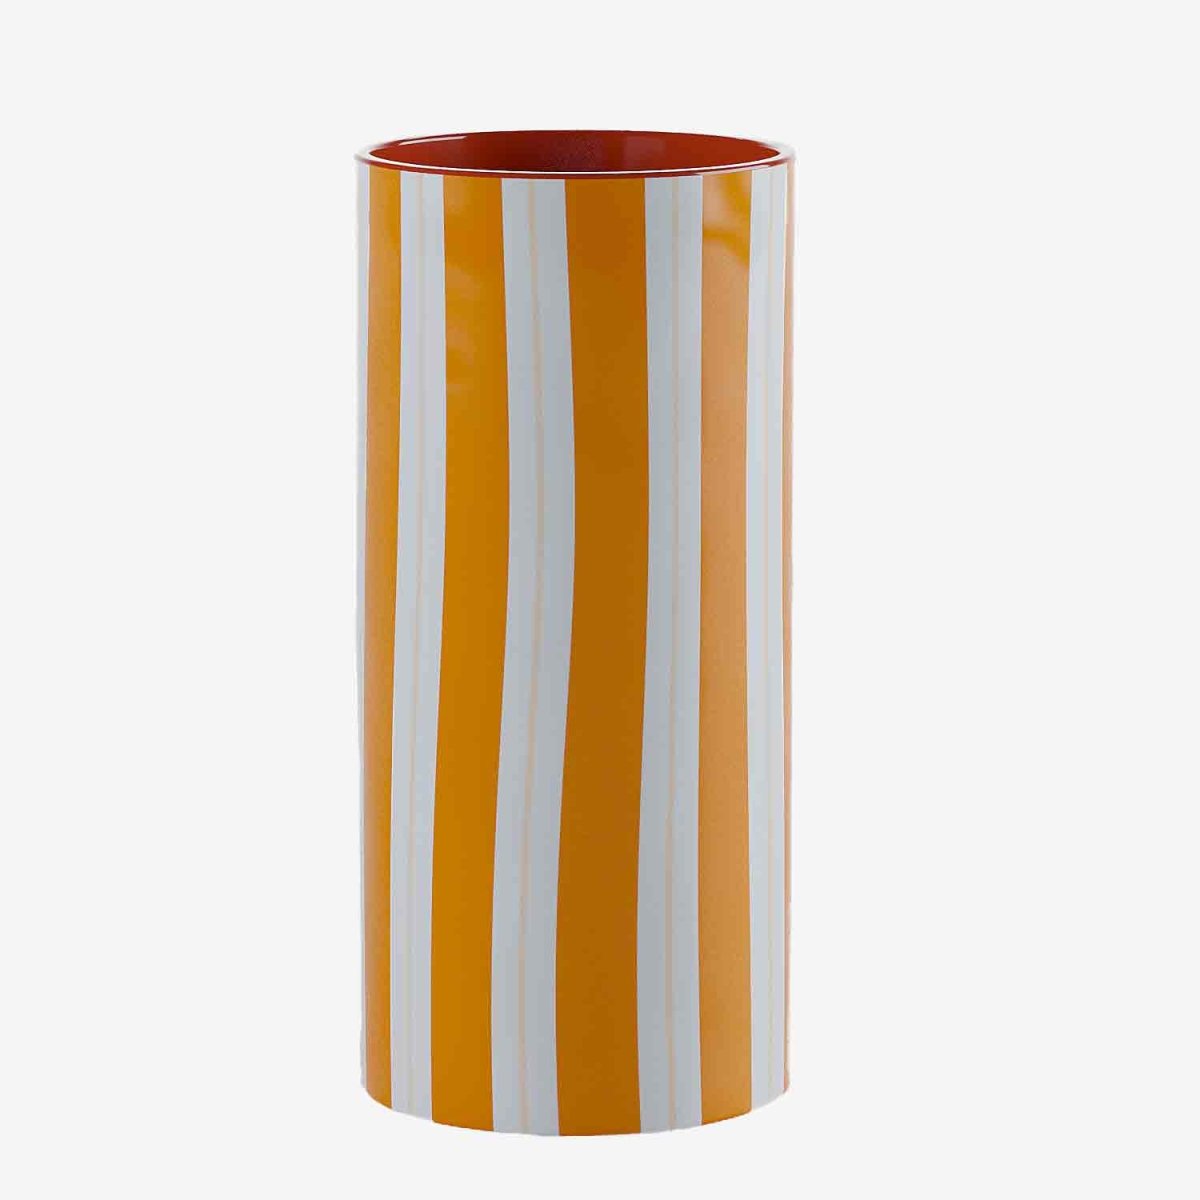 Dans une chambre de style bohème avec un bouquet de branches de coton,  dans un salon moderne pour la touche de couleur de la céramique rayée orange, ce grand vase droit est un atout déco